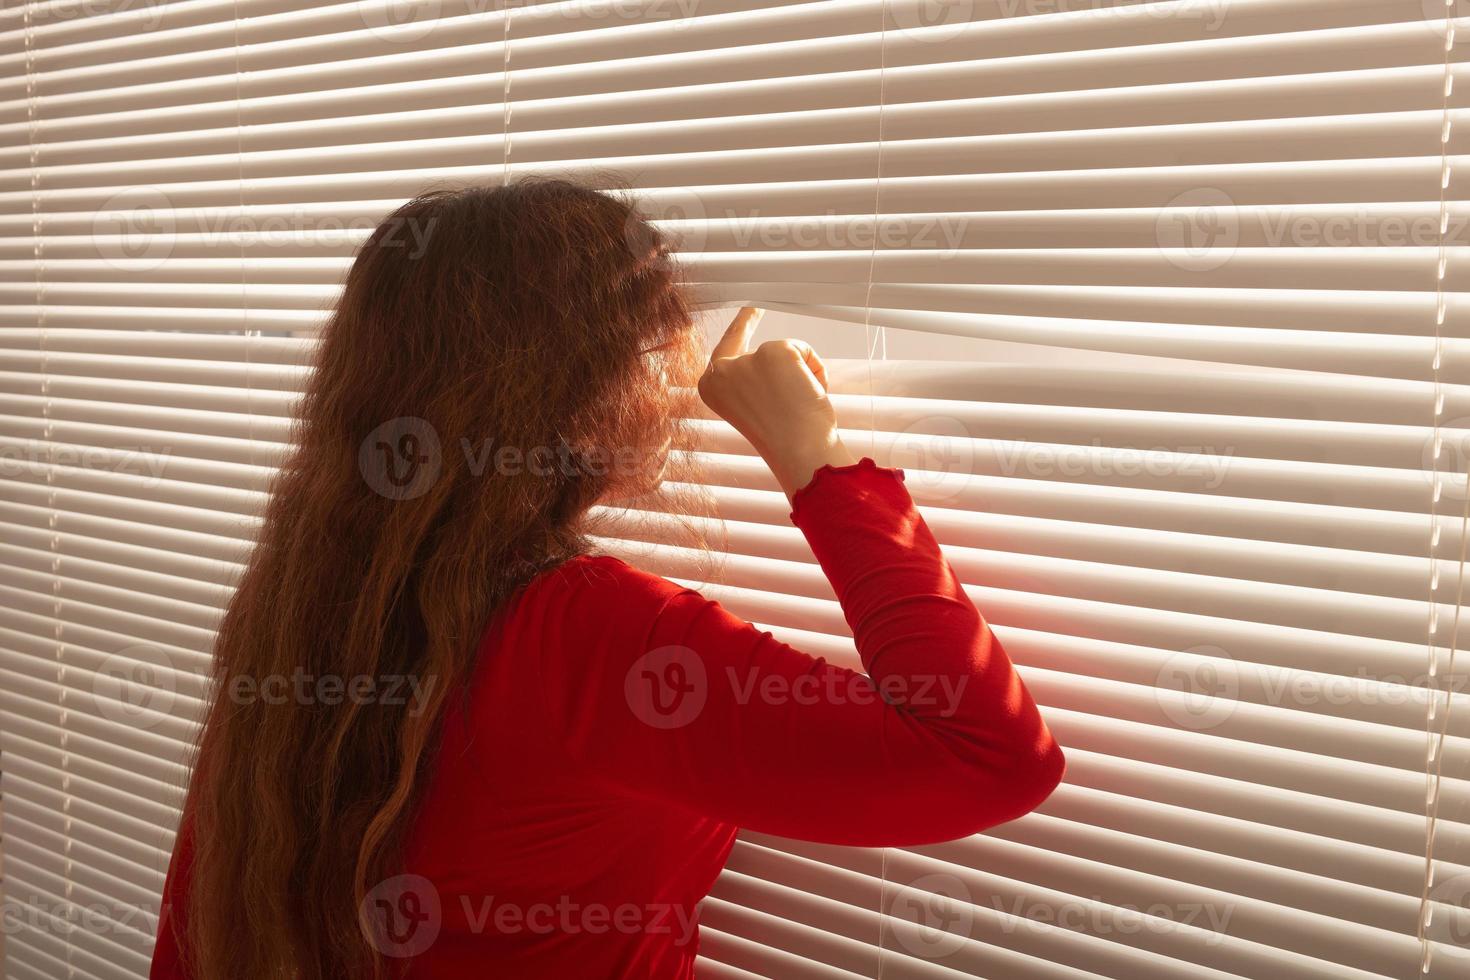 Rückansicht einer schönen jungen Frau mit langen Haaren, die durch ein Loch in den Jalousien blickt und aus dem Fenster schaut. überwachungs- und neugierkonzept foto